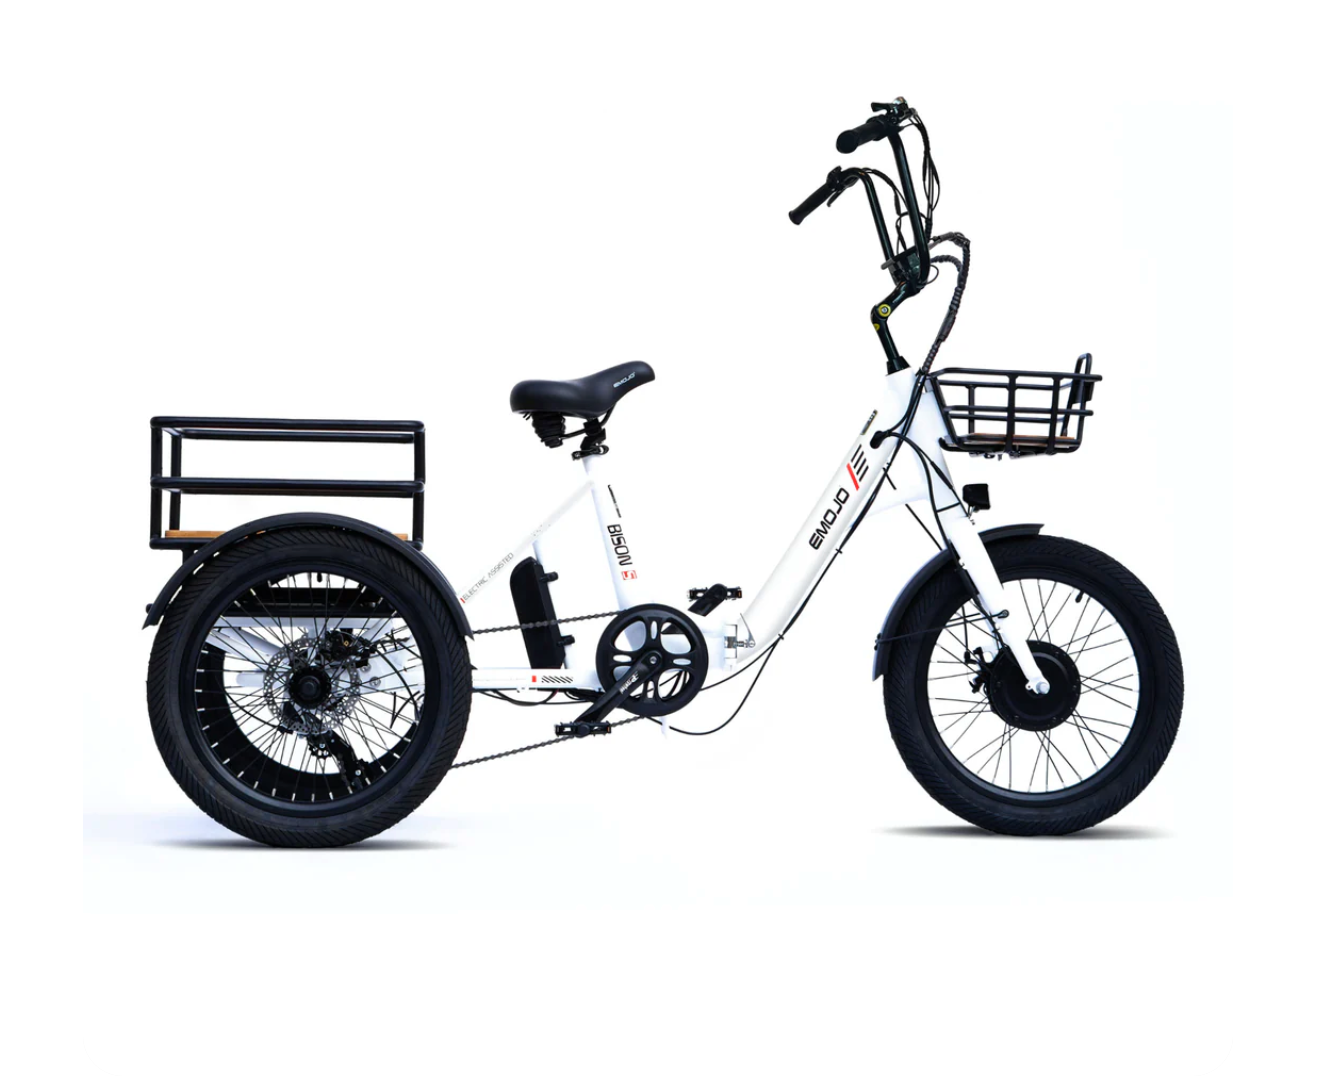 Emojo Bison S Folding Electric Trike Bike VALENTINES BONUS